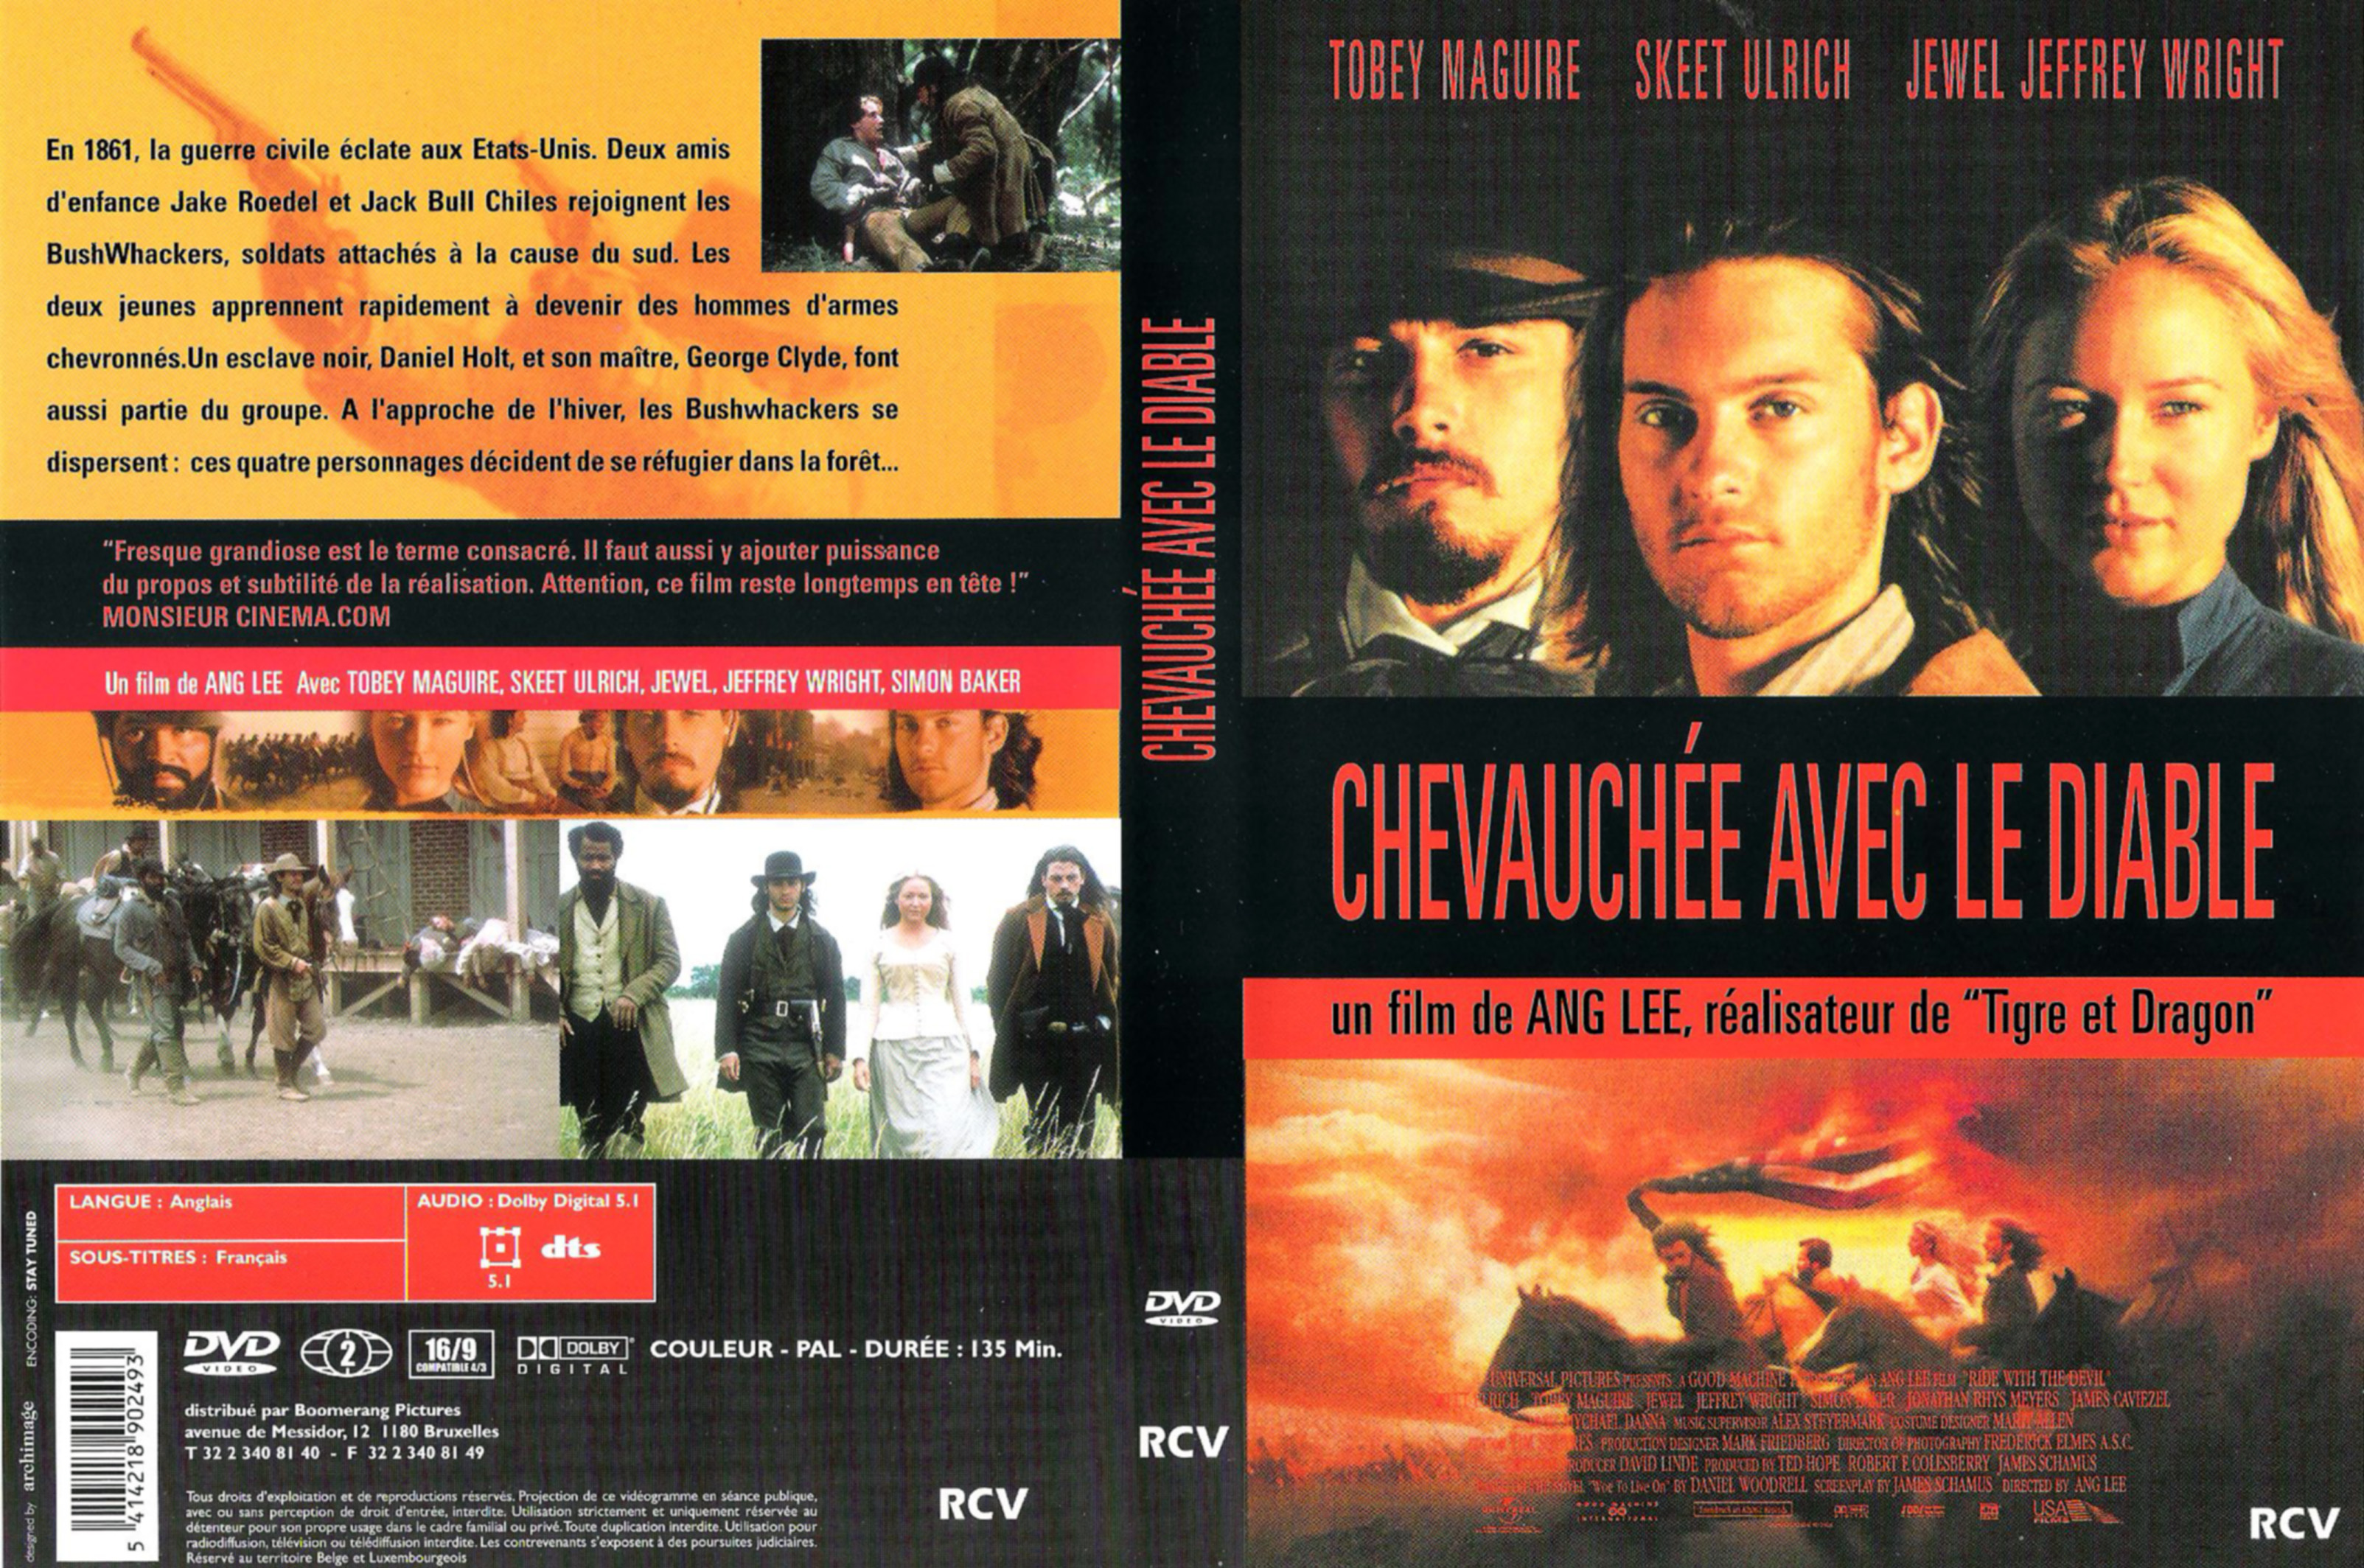 Jaquette DVD Chevauche avec le diable